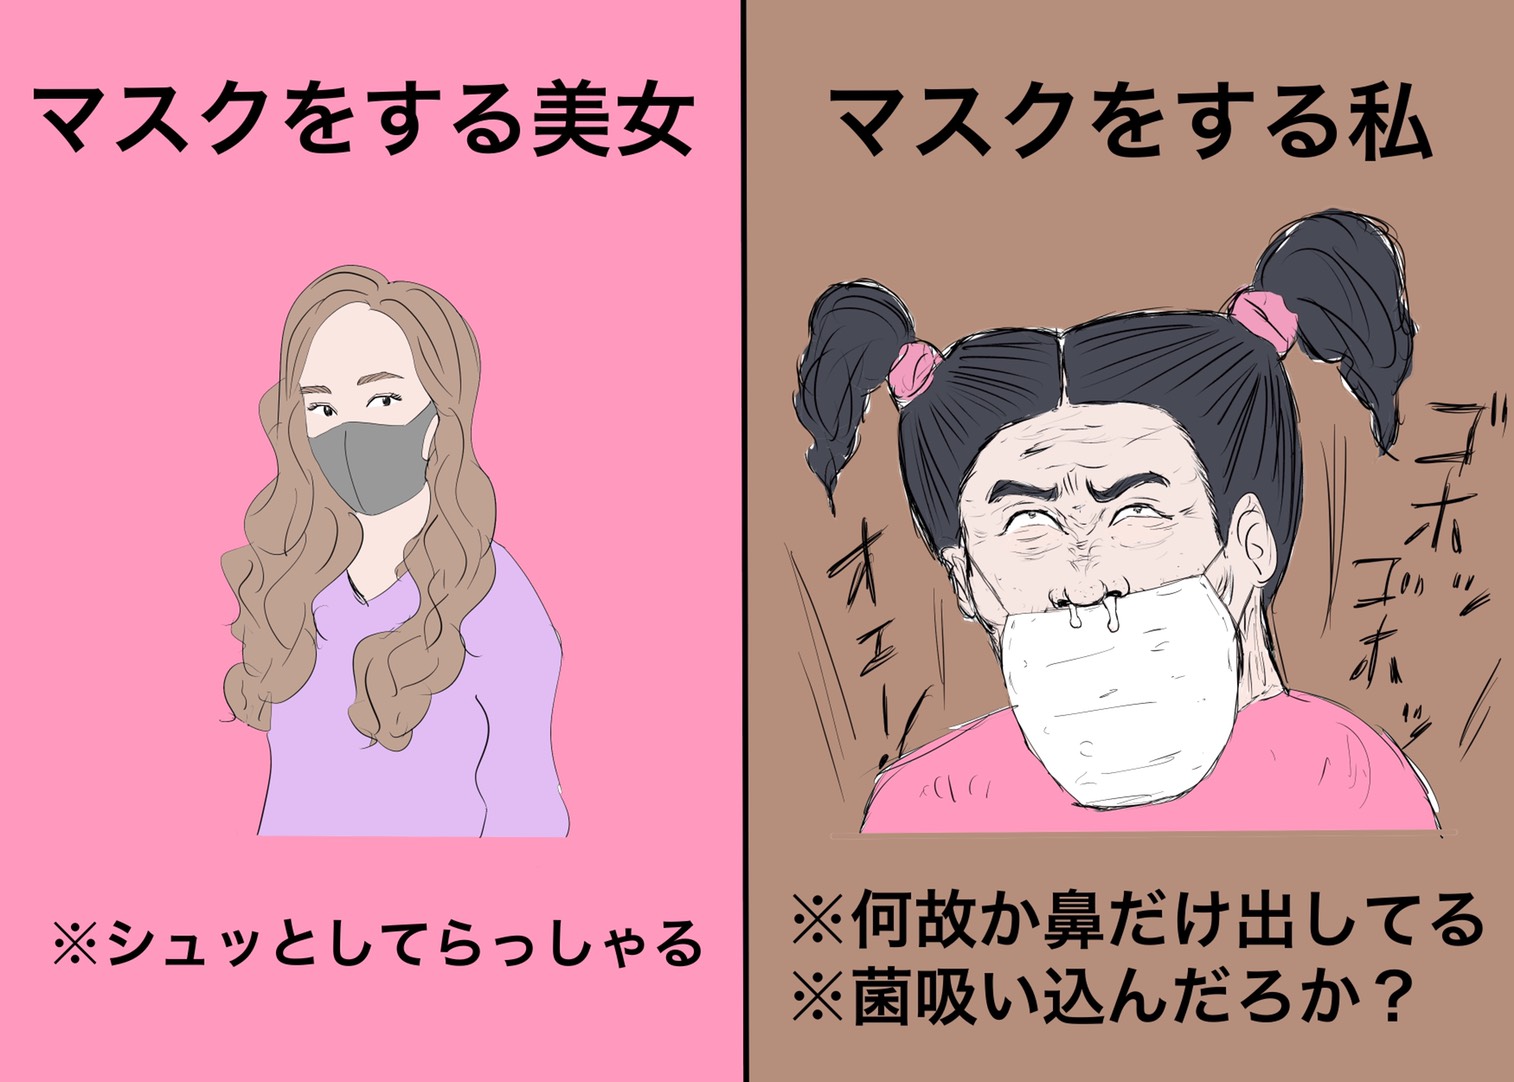 渋谷にまつわるイッヌの約1000文字エッセイ 3 恋愛観が黒マスクのつけ方で一つで分かるという件について ローリエプレス